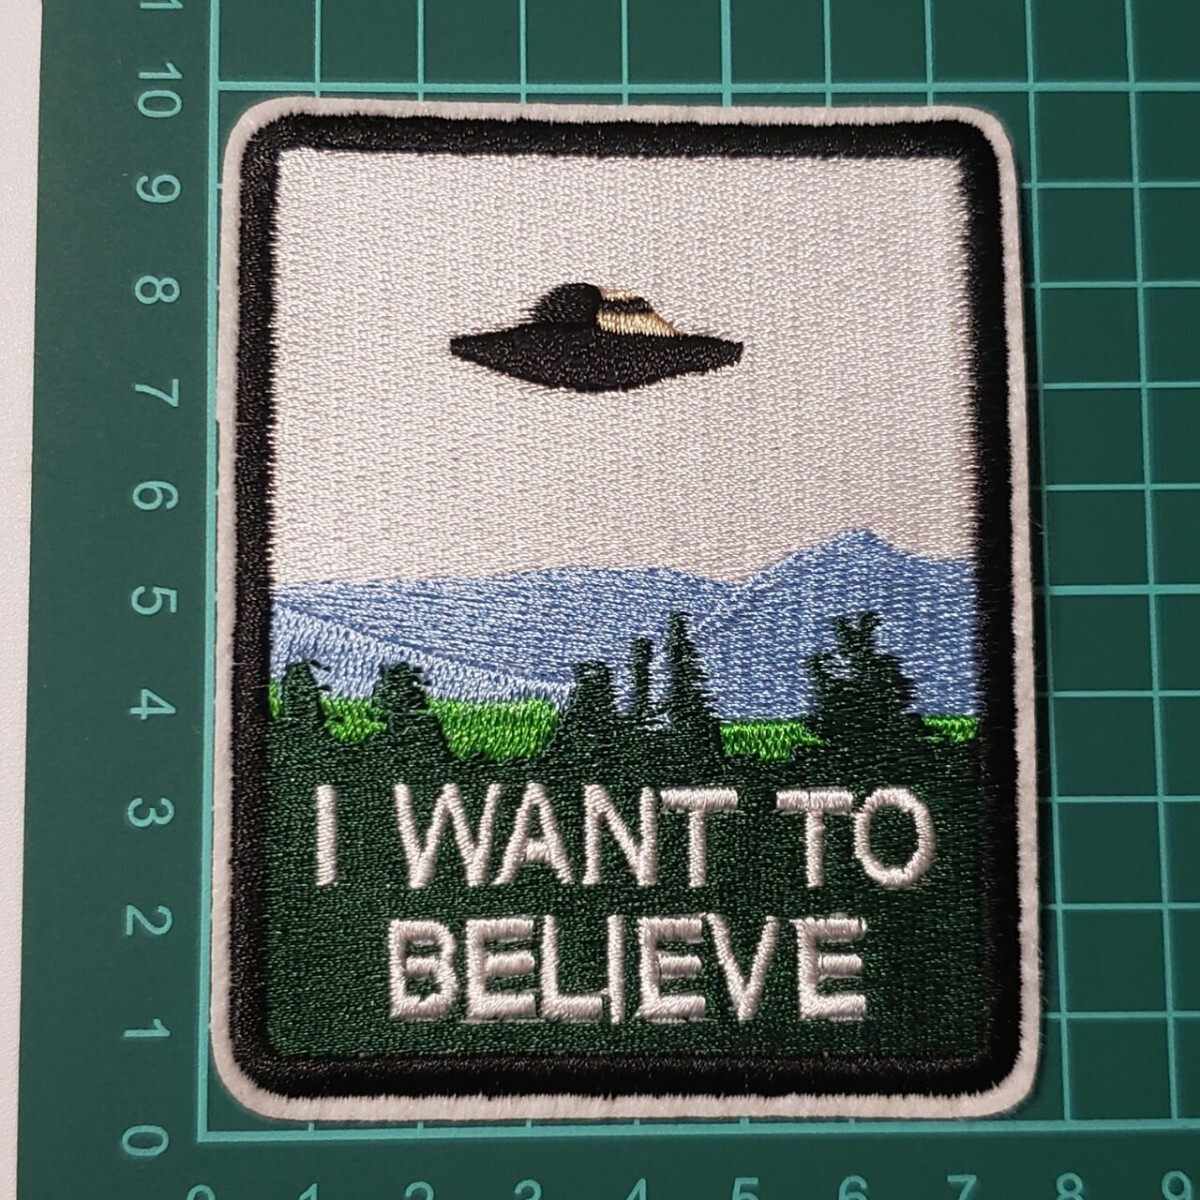 U-2【 アイロンワッペン 】 刺繍ワッペン アップリケ リメイク UFO ユーフォー 未確認飛行物体 ワッペン アイロンワッペン patch パッチの画像2